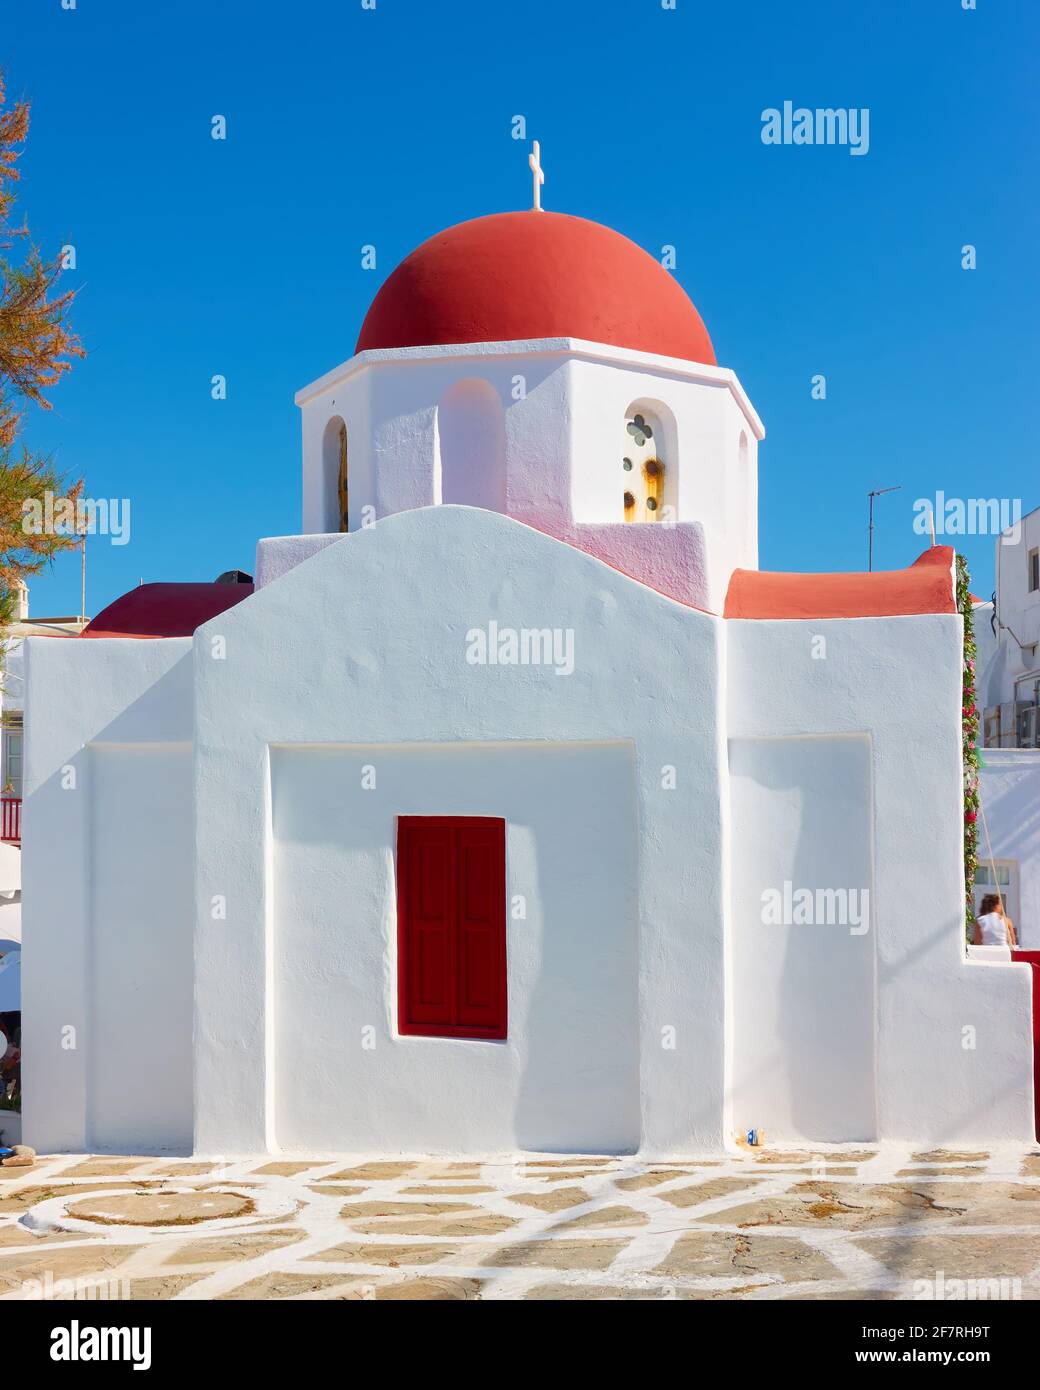 Église grecque avec dôme rouge à Mykonos, Grèce Banque D'Images